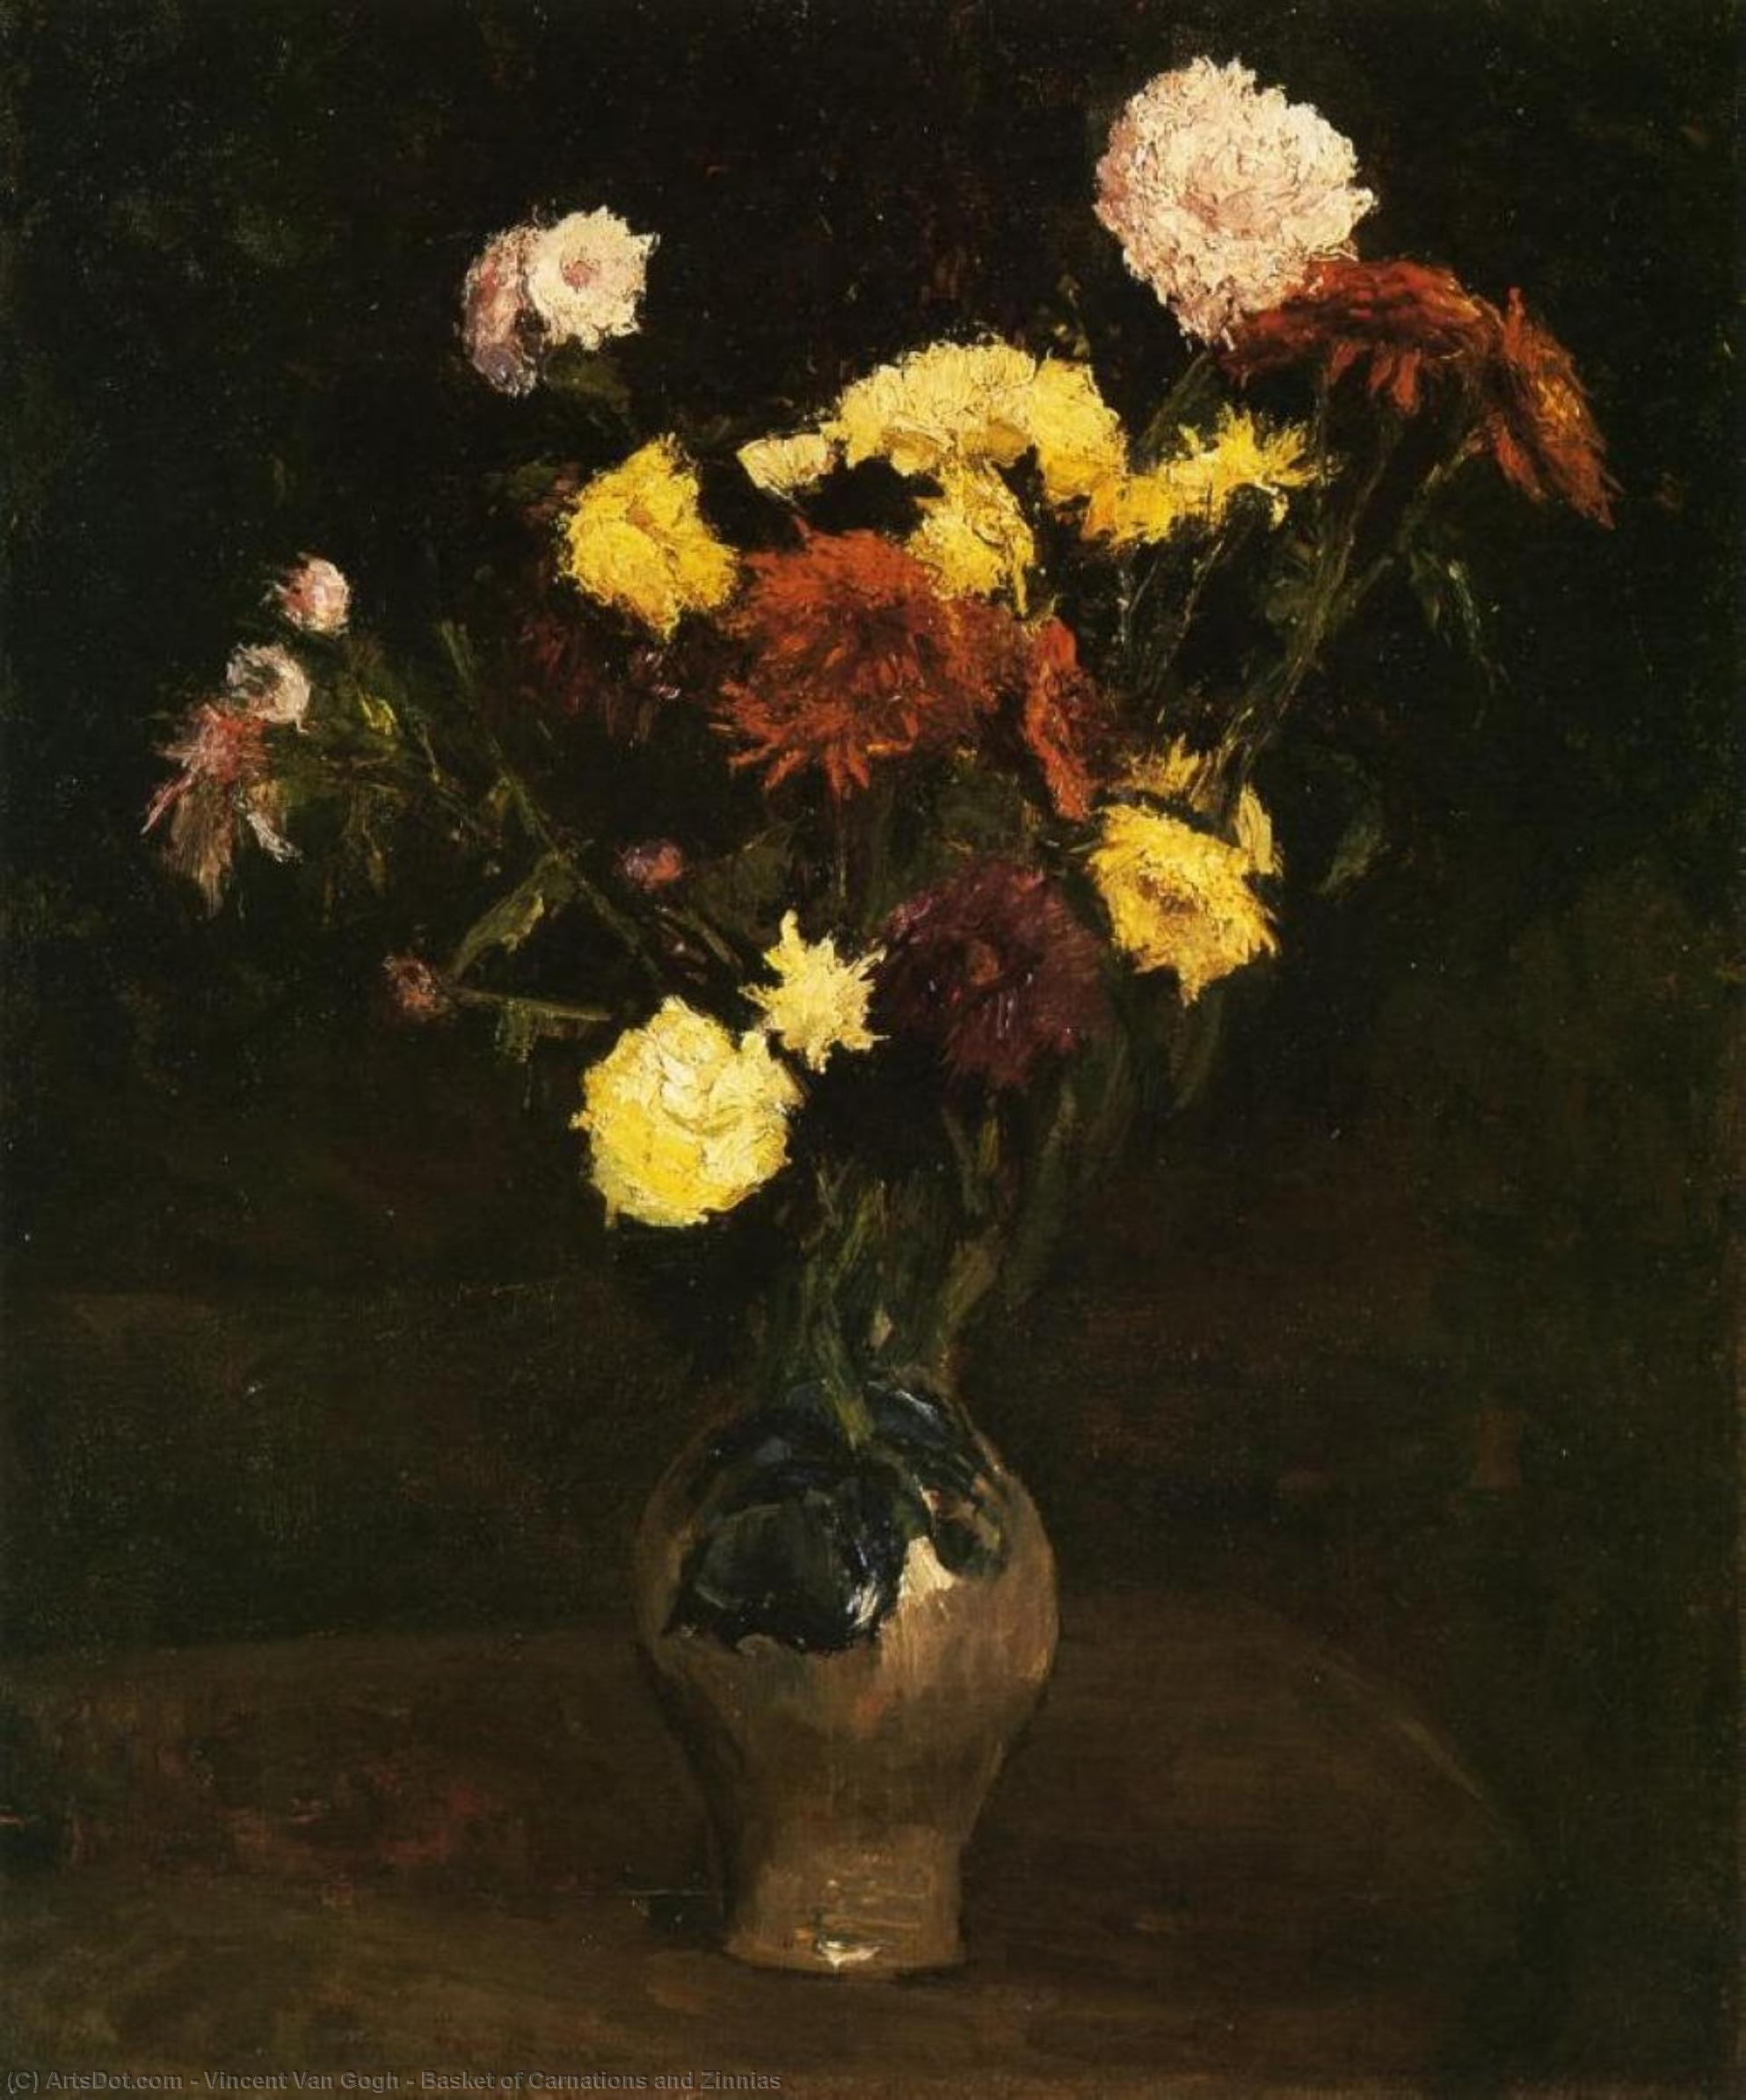 WikiOO.org - Enciclopédia das Belas Artes - Pintura, Arte por Vincent Van Gogh - Basket of Carnations and Zinnias